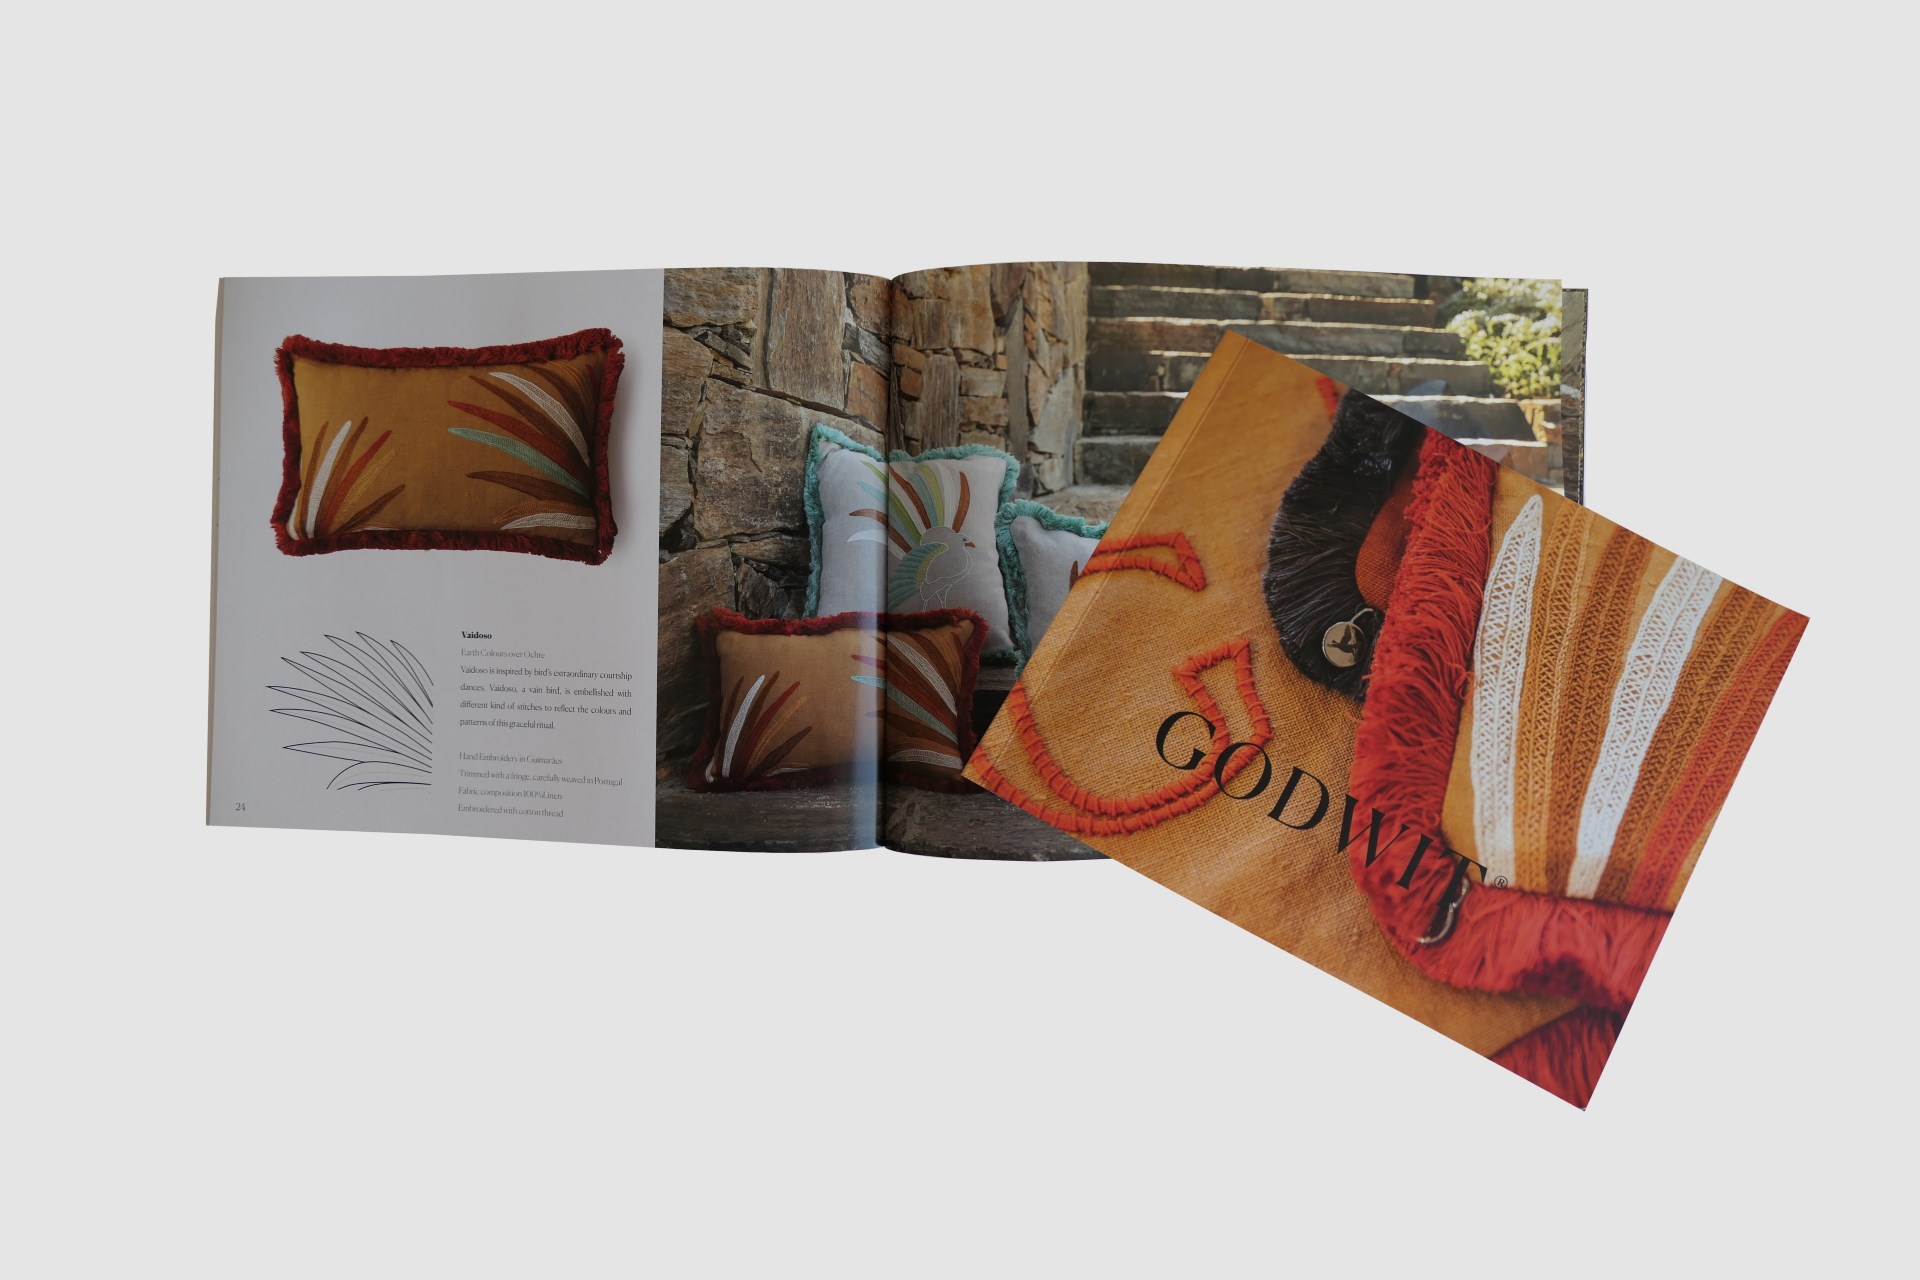  Catálogo “Godwit” com 36 páginas cozido e brochado a capa